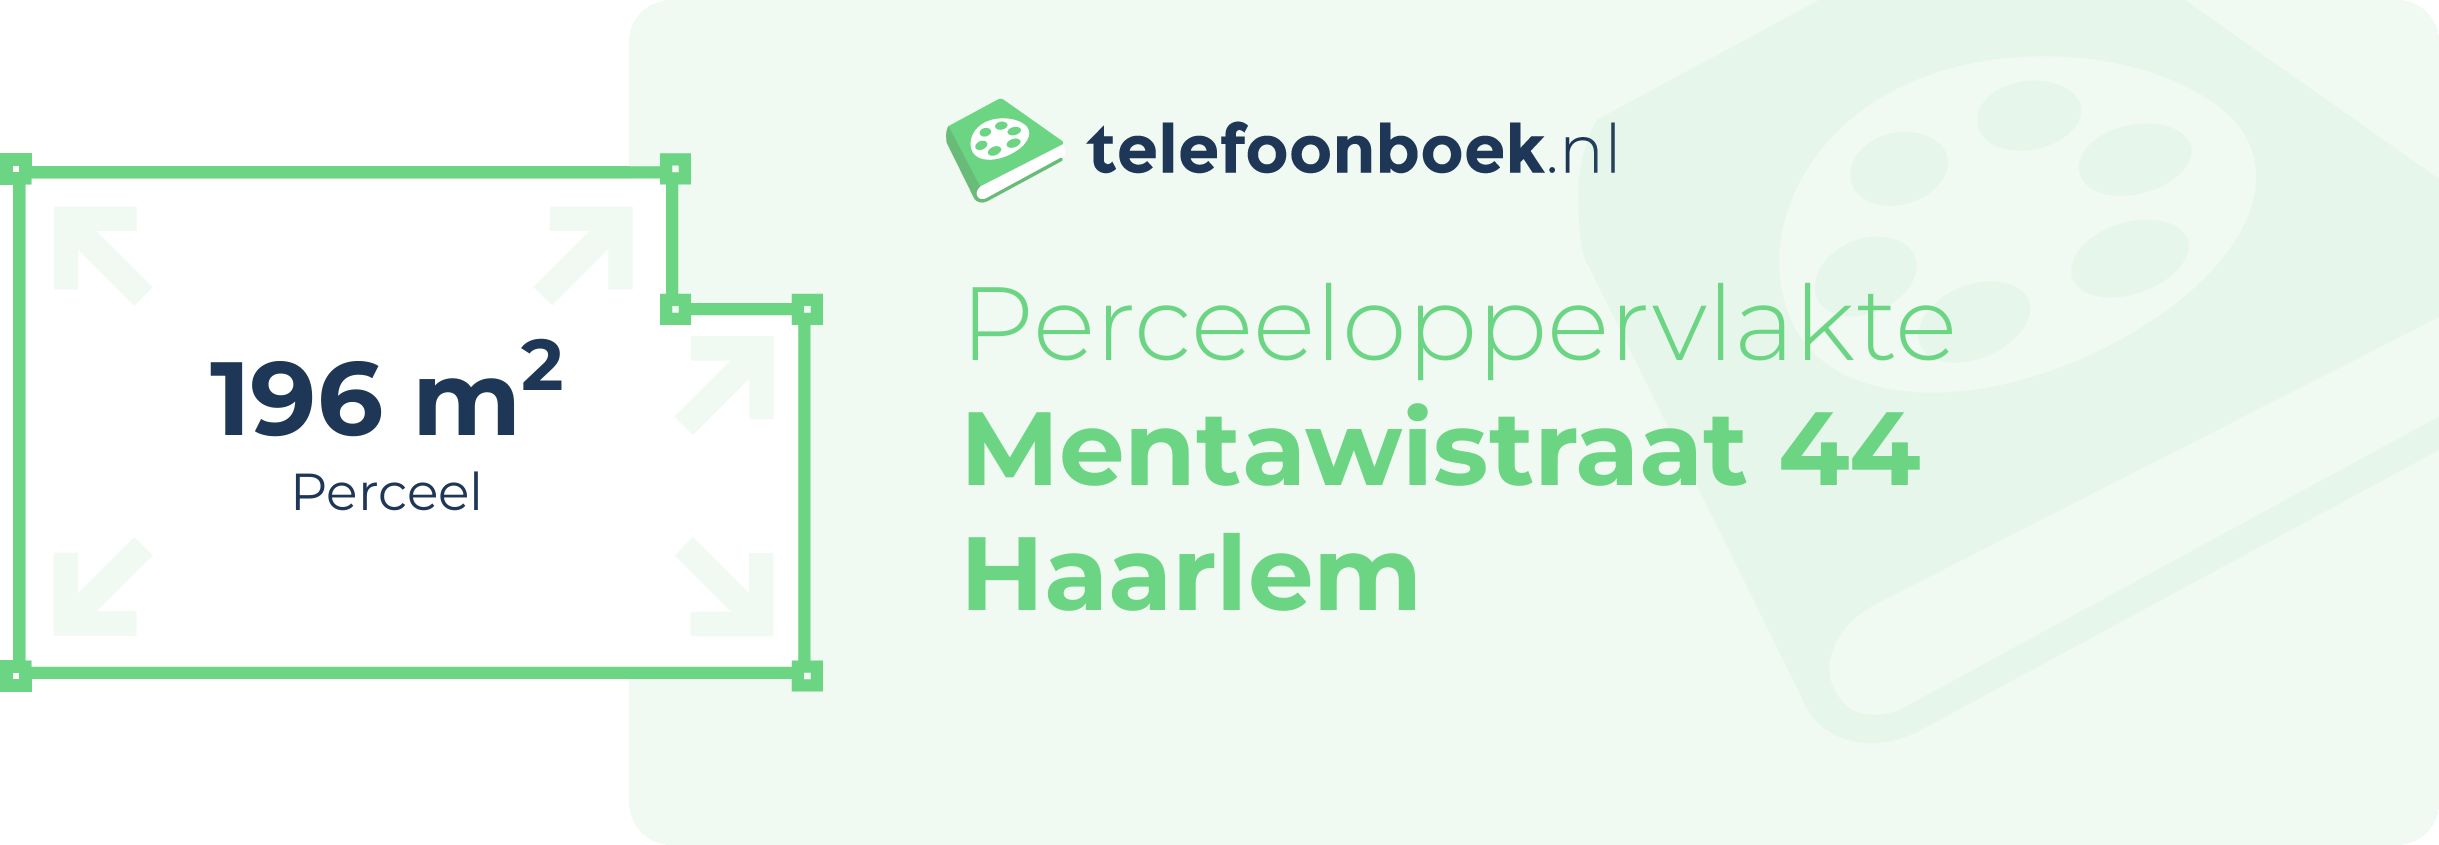 Perceeloppervlakte Mentawistraat 44 Haarlem